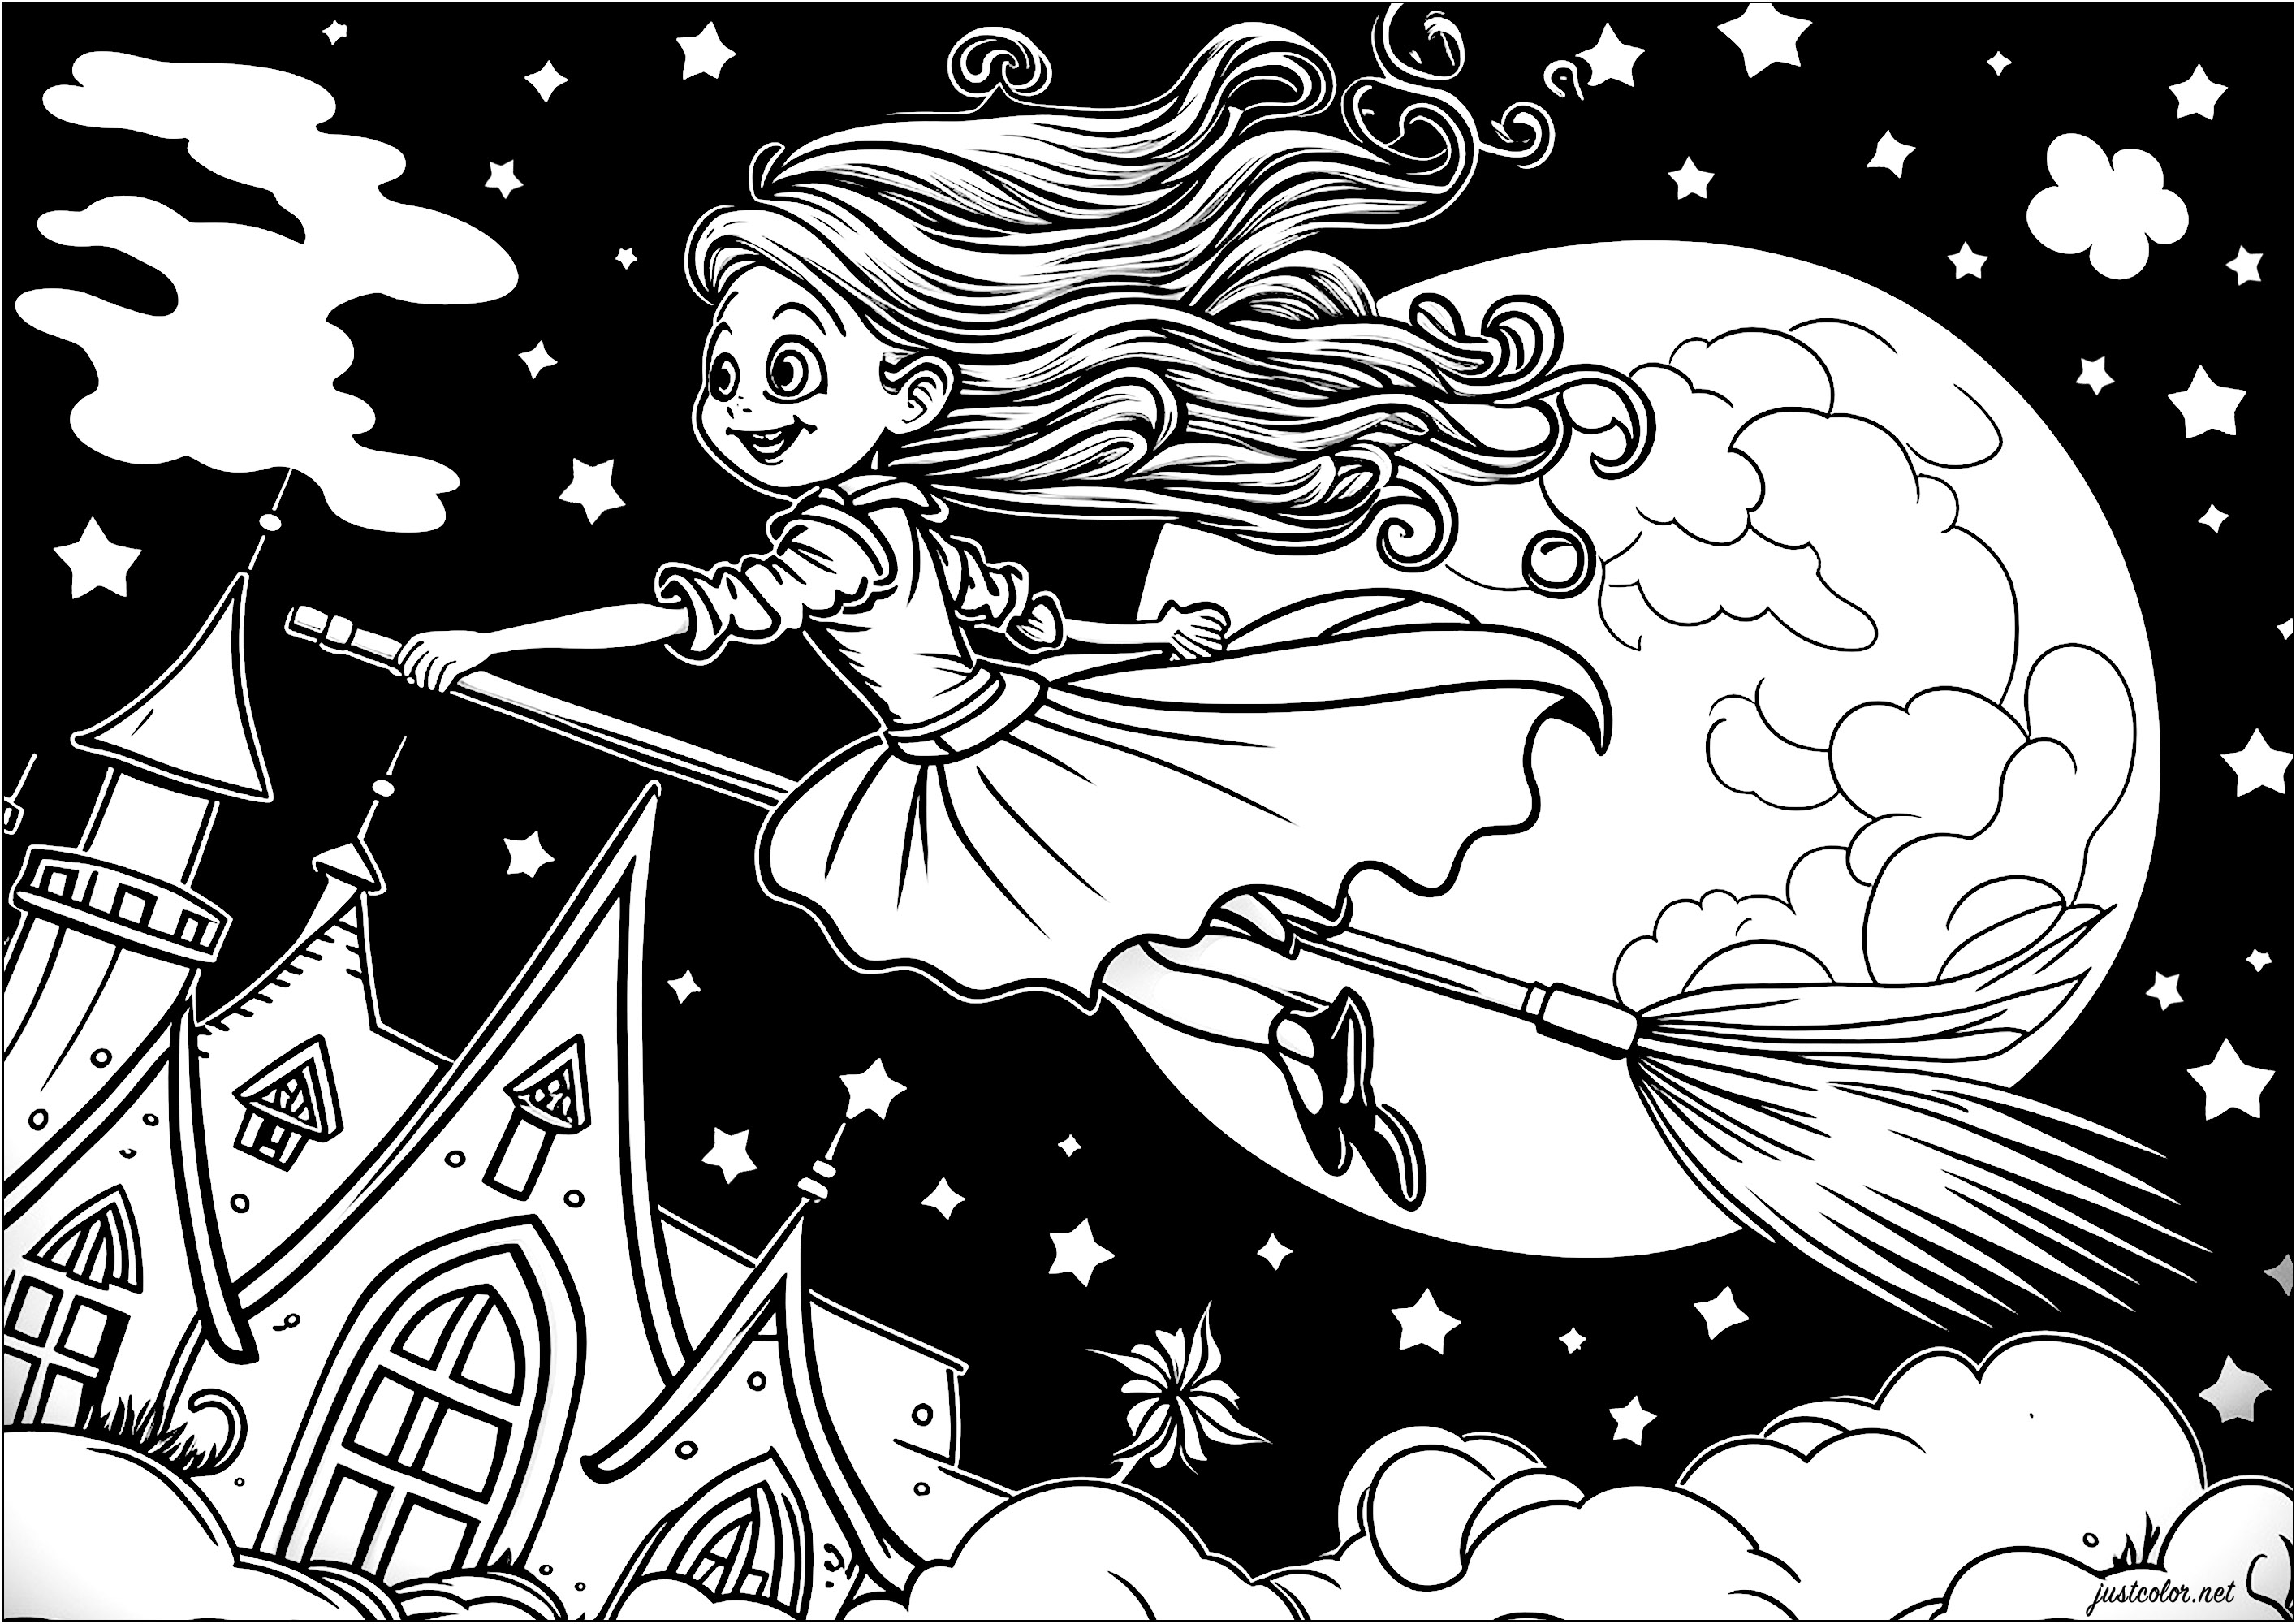 Coloreado de una joven bruja volando en su escoba. He aquí una bonita bruja representada en su escoba volando en el aire, por encima de las nubes. Lleva un vestido largo y elegante, y su pelo ondea al viento. La luna está llena y parece gigante detrás de ella.